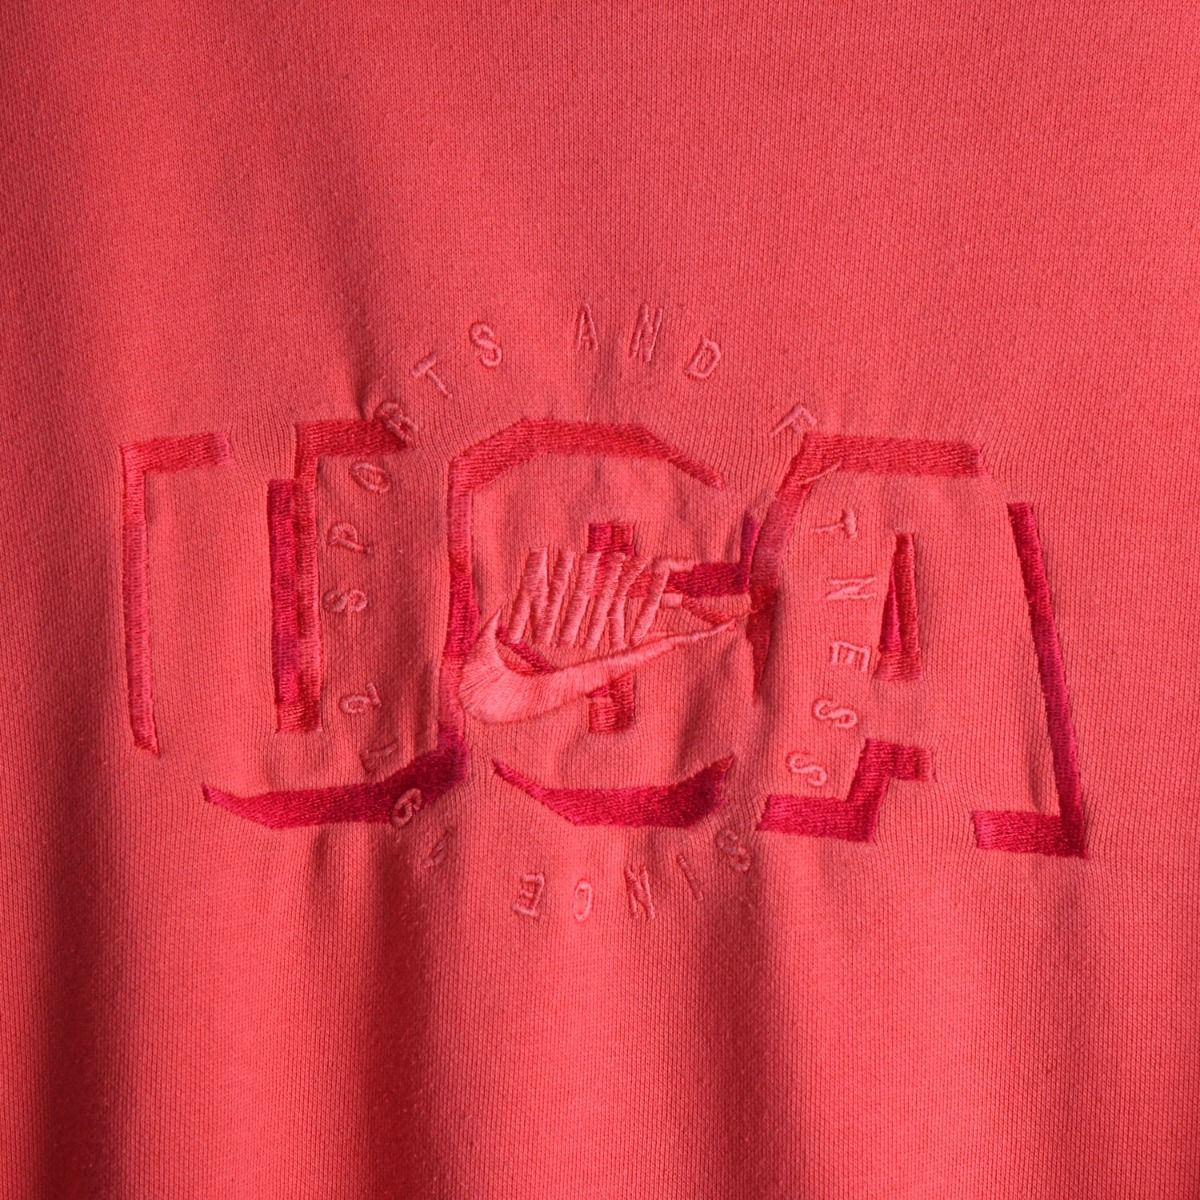 Nike Early 1990s USA Sweatshirt